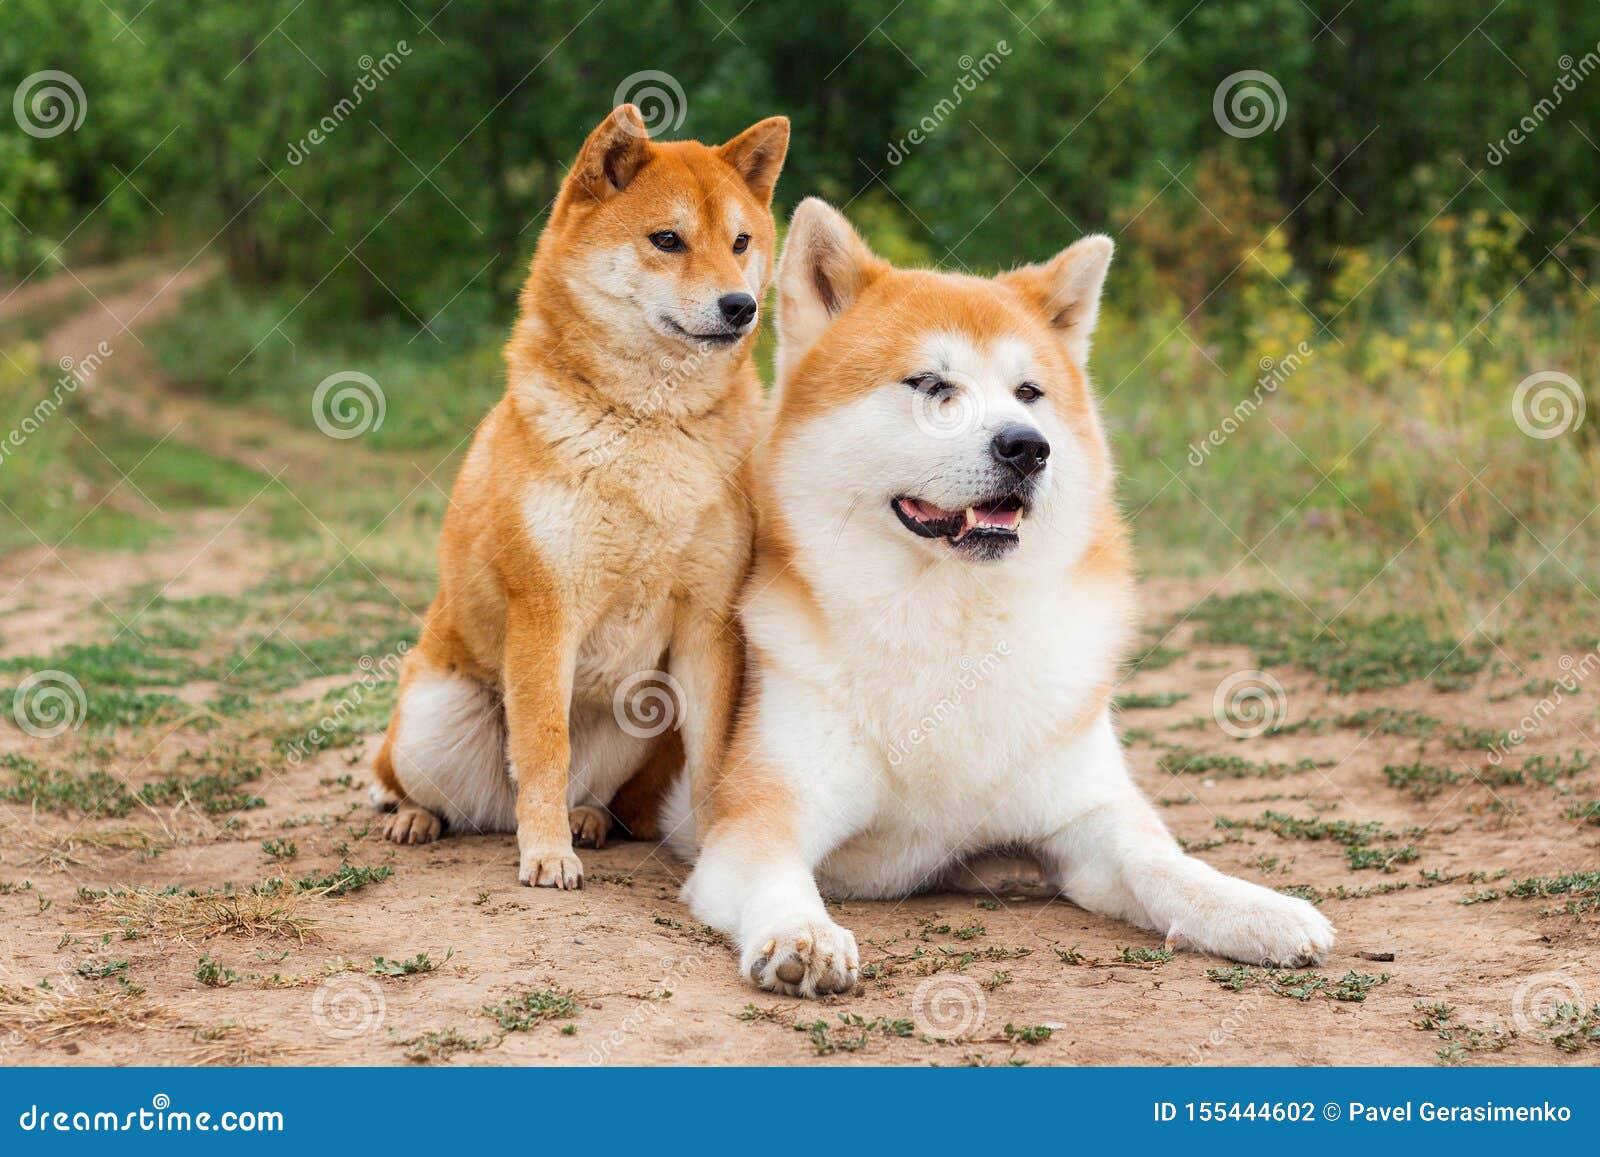 Two Japanese Dogs Akita Inu And Shiba Inu Stock Photo Image Of Animal Shiba